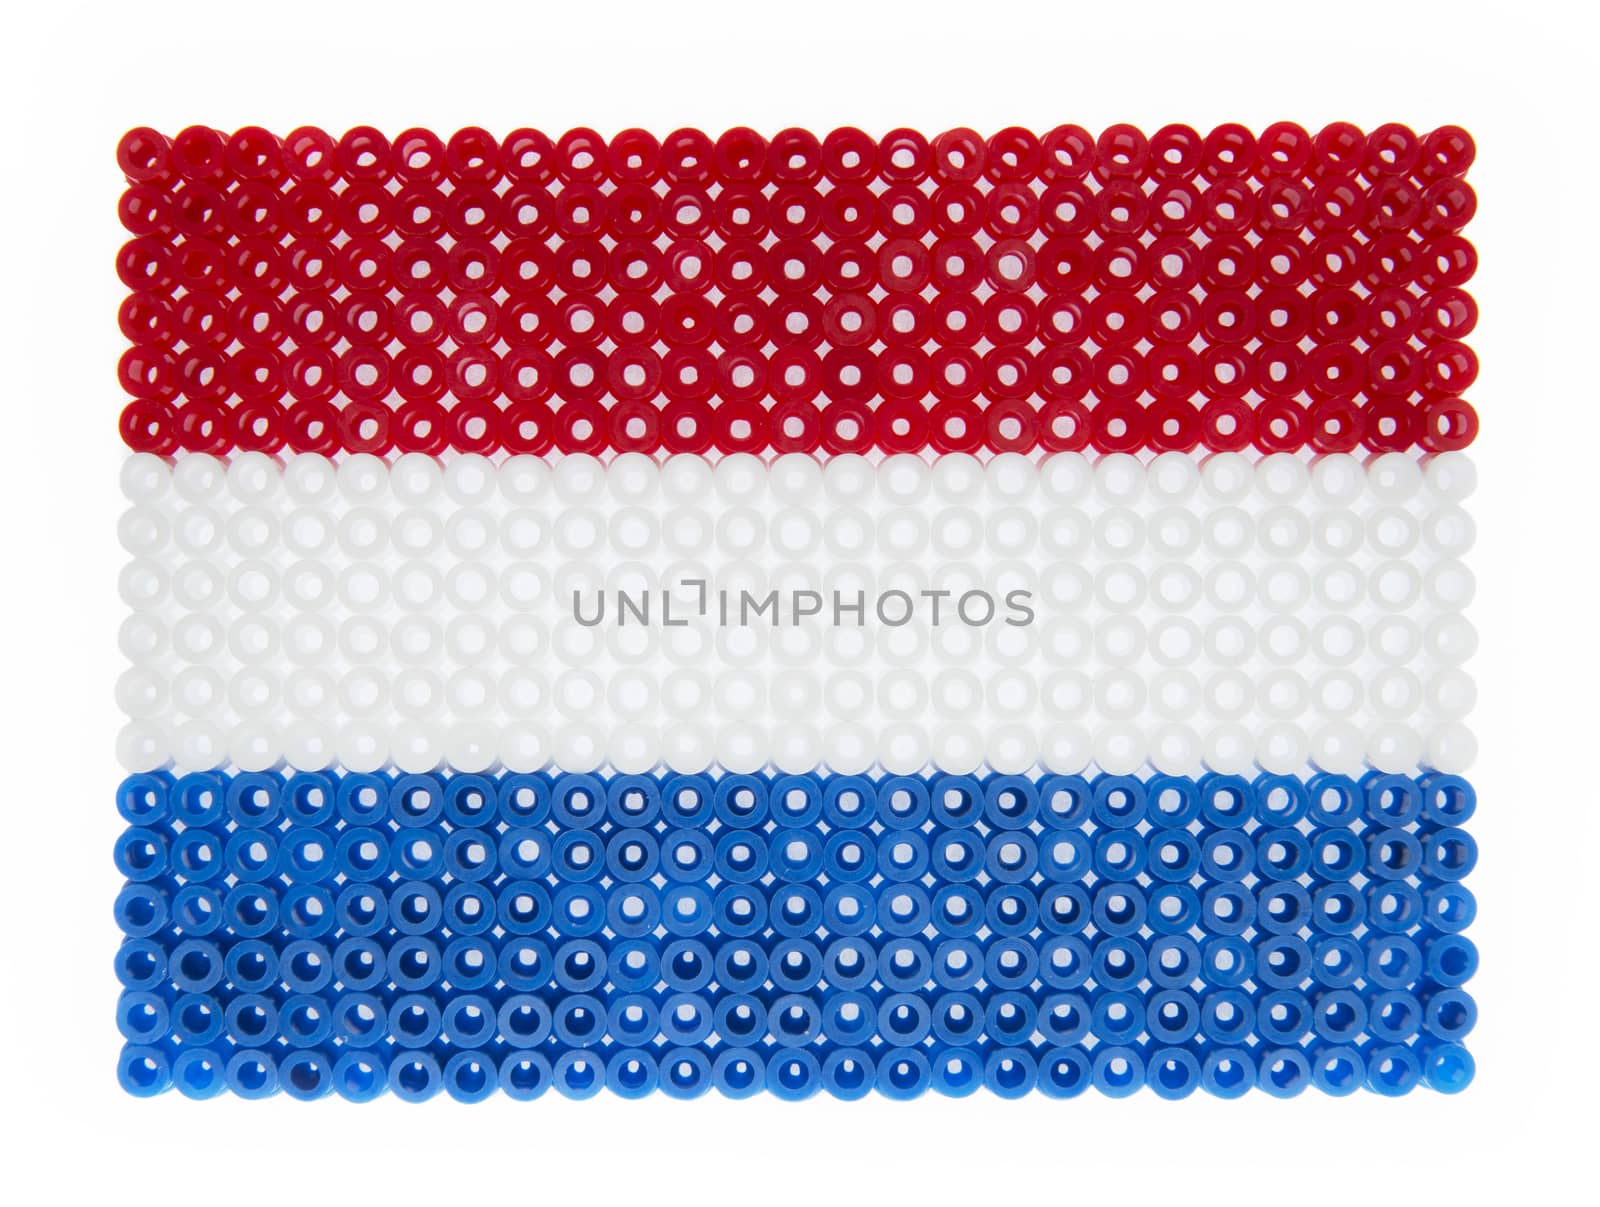 Dutch Flag by gemenacom